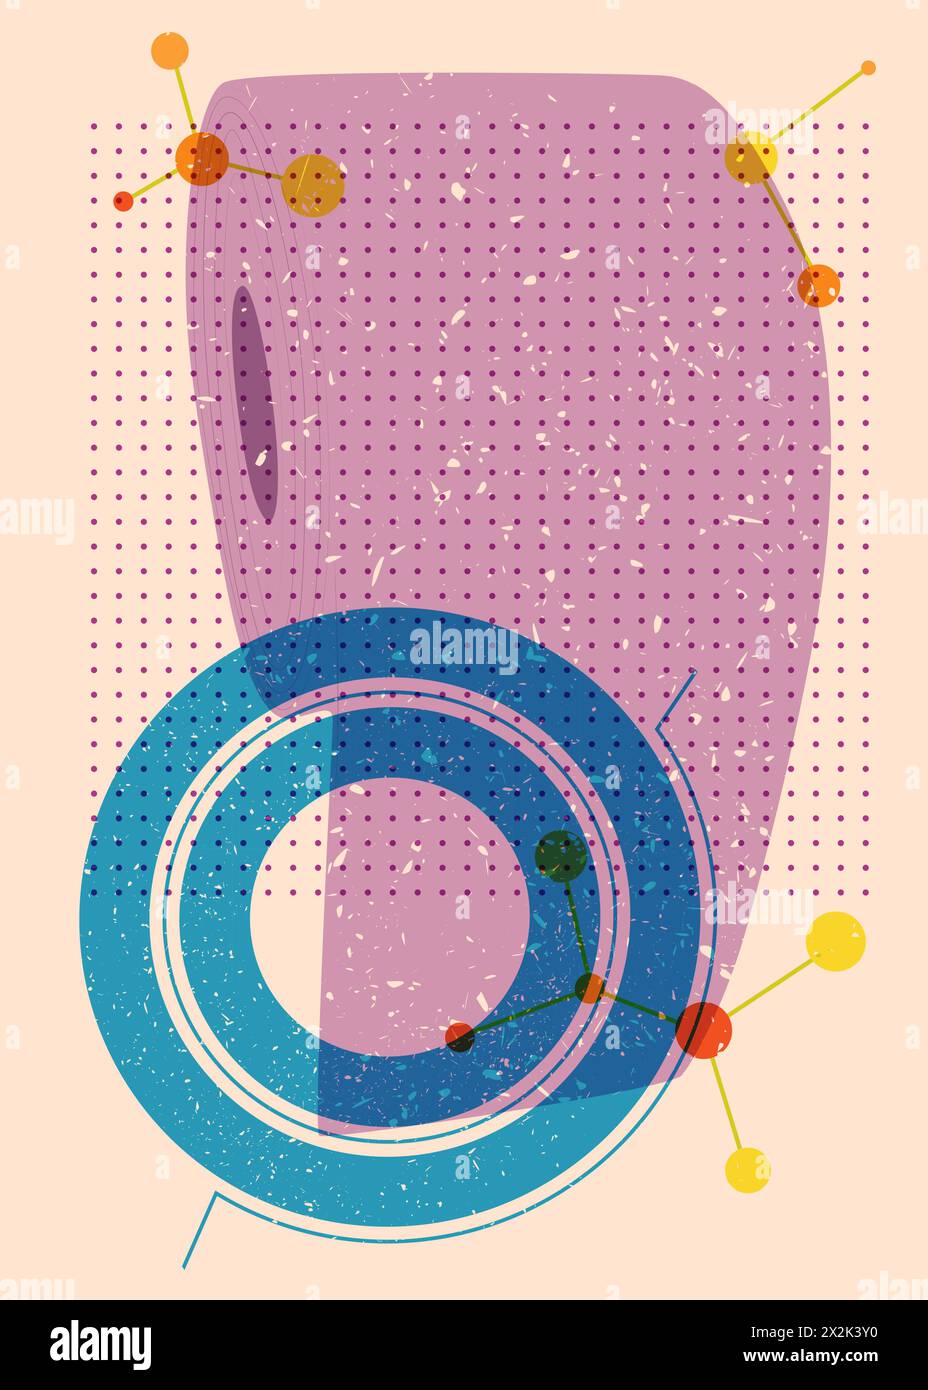 Carta igienica risografica con forme geometriche. Oggetti in stile texture con stampa a grafico riso di tendenza con elementi geometrici. Illustrazione Vettoriale